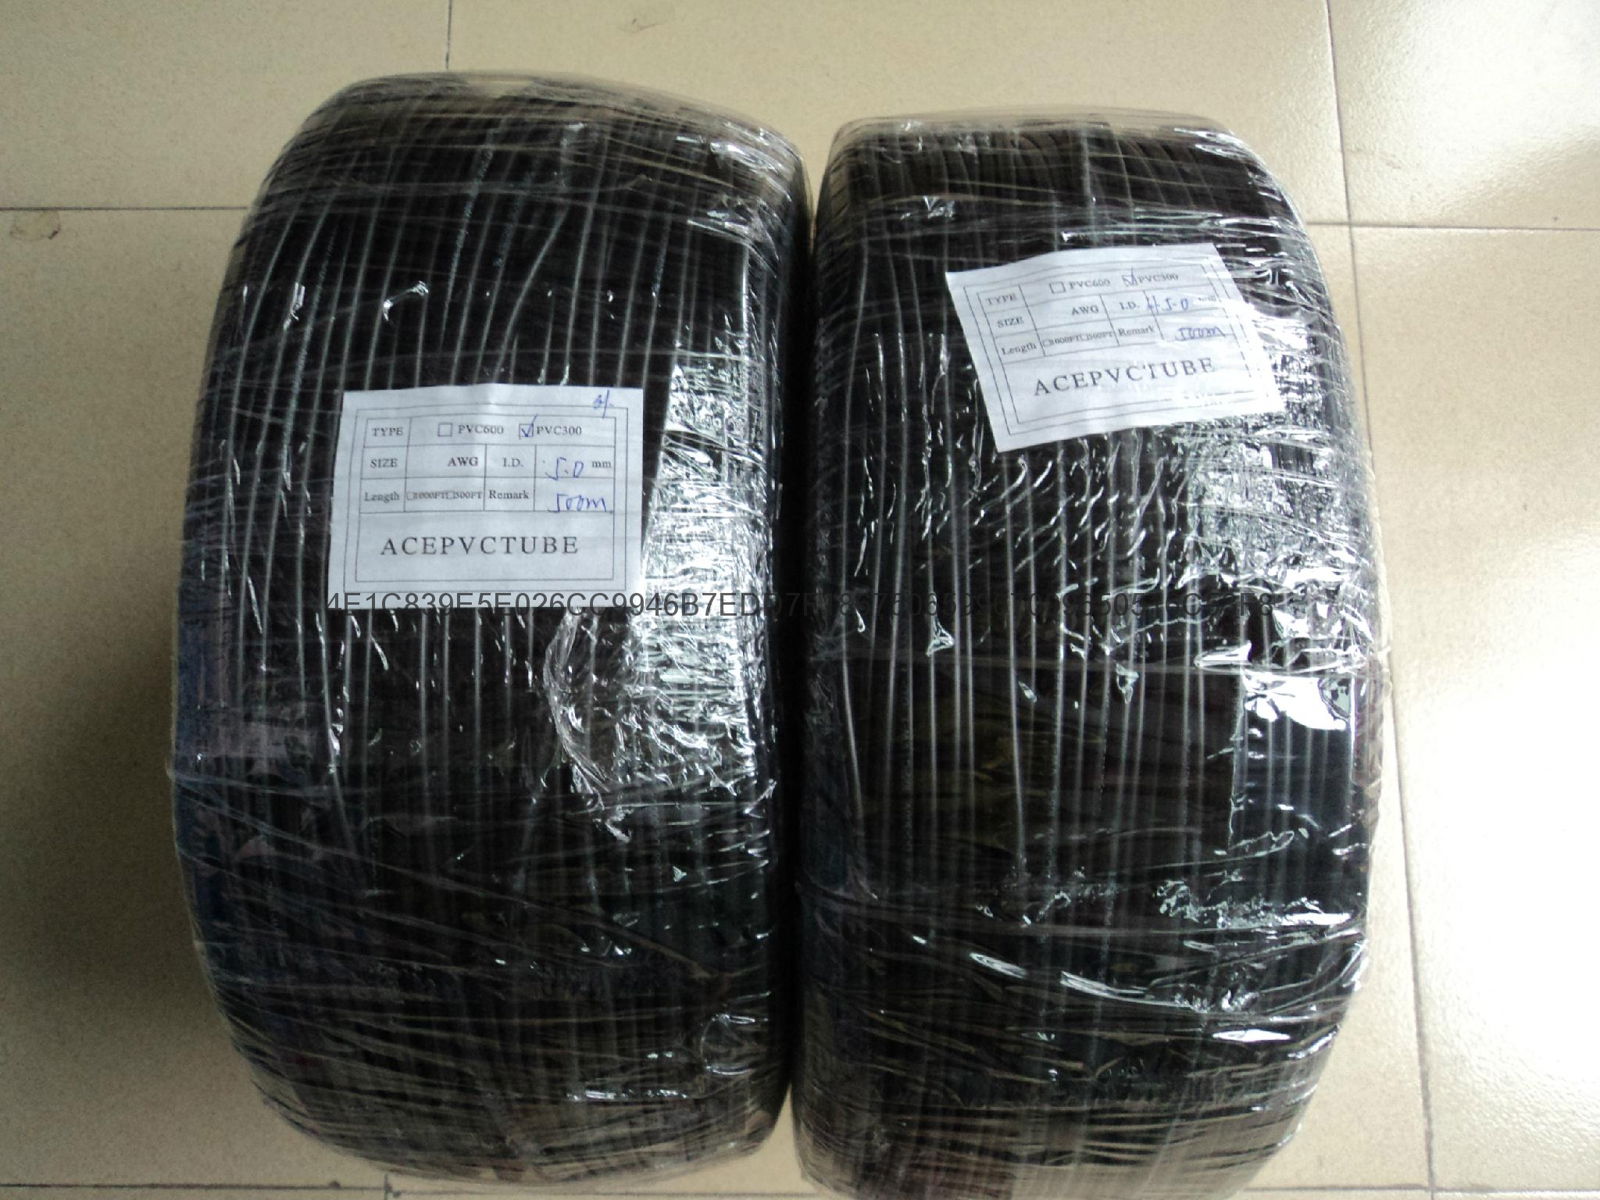 PVC casing, the black black PVC tubes, black rubber hoses